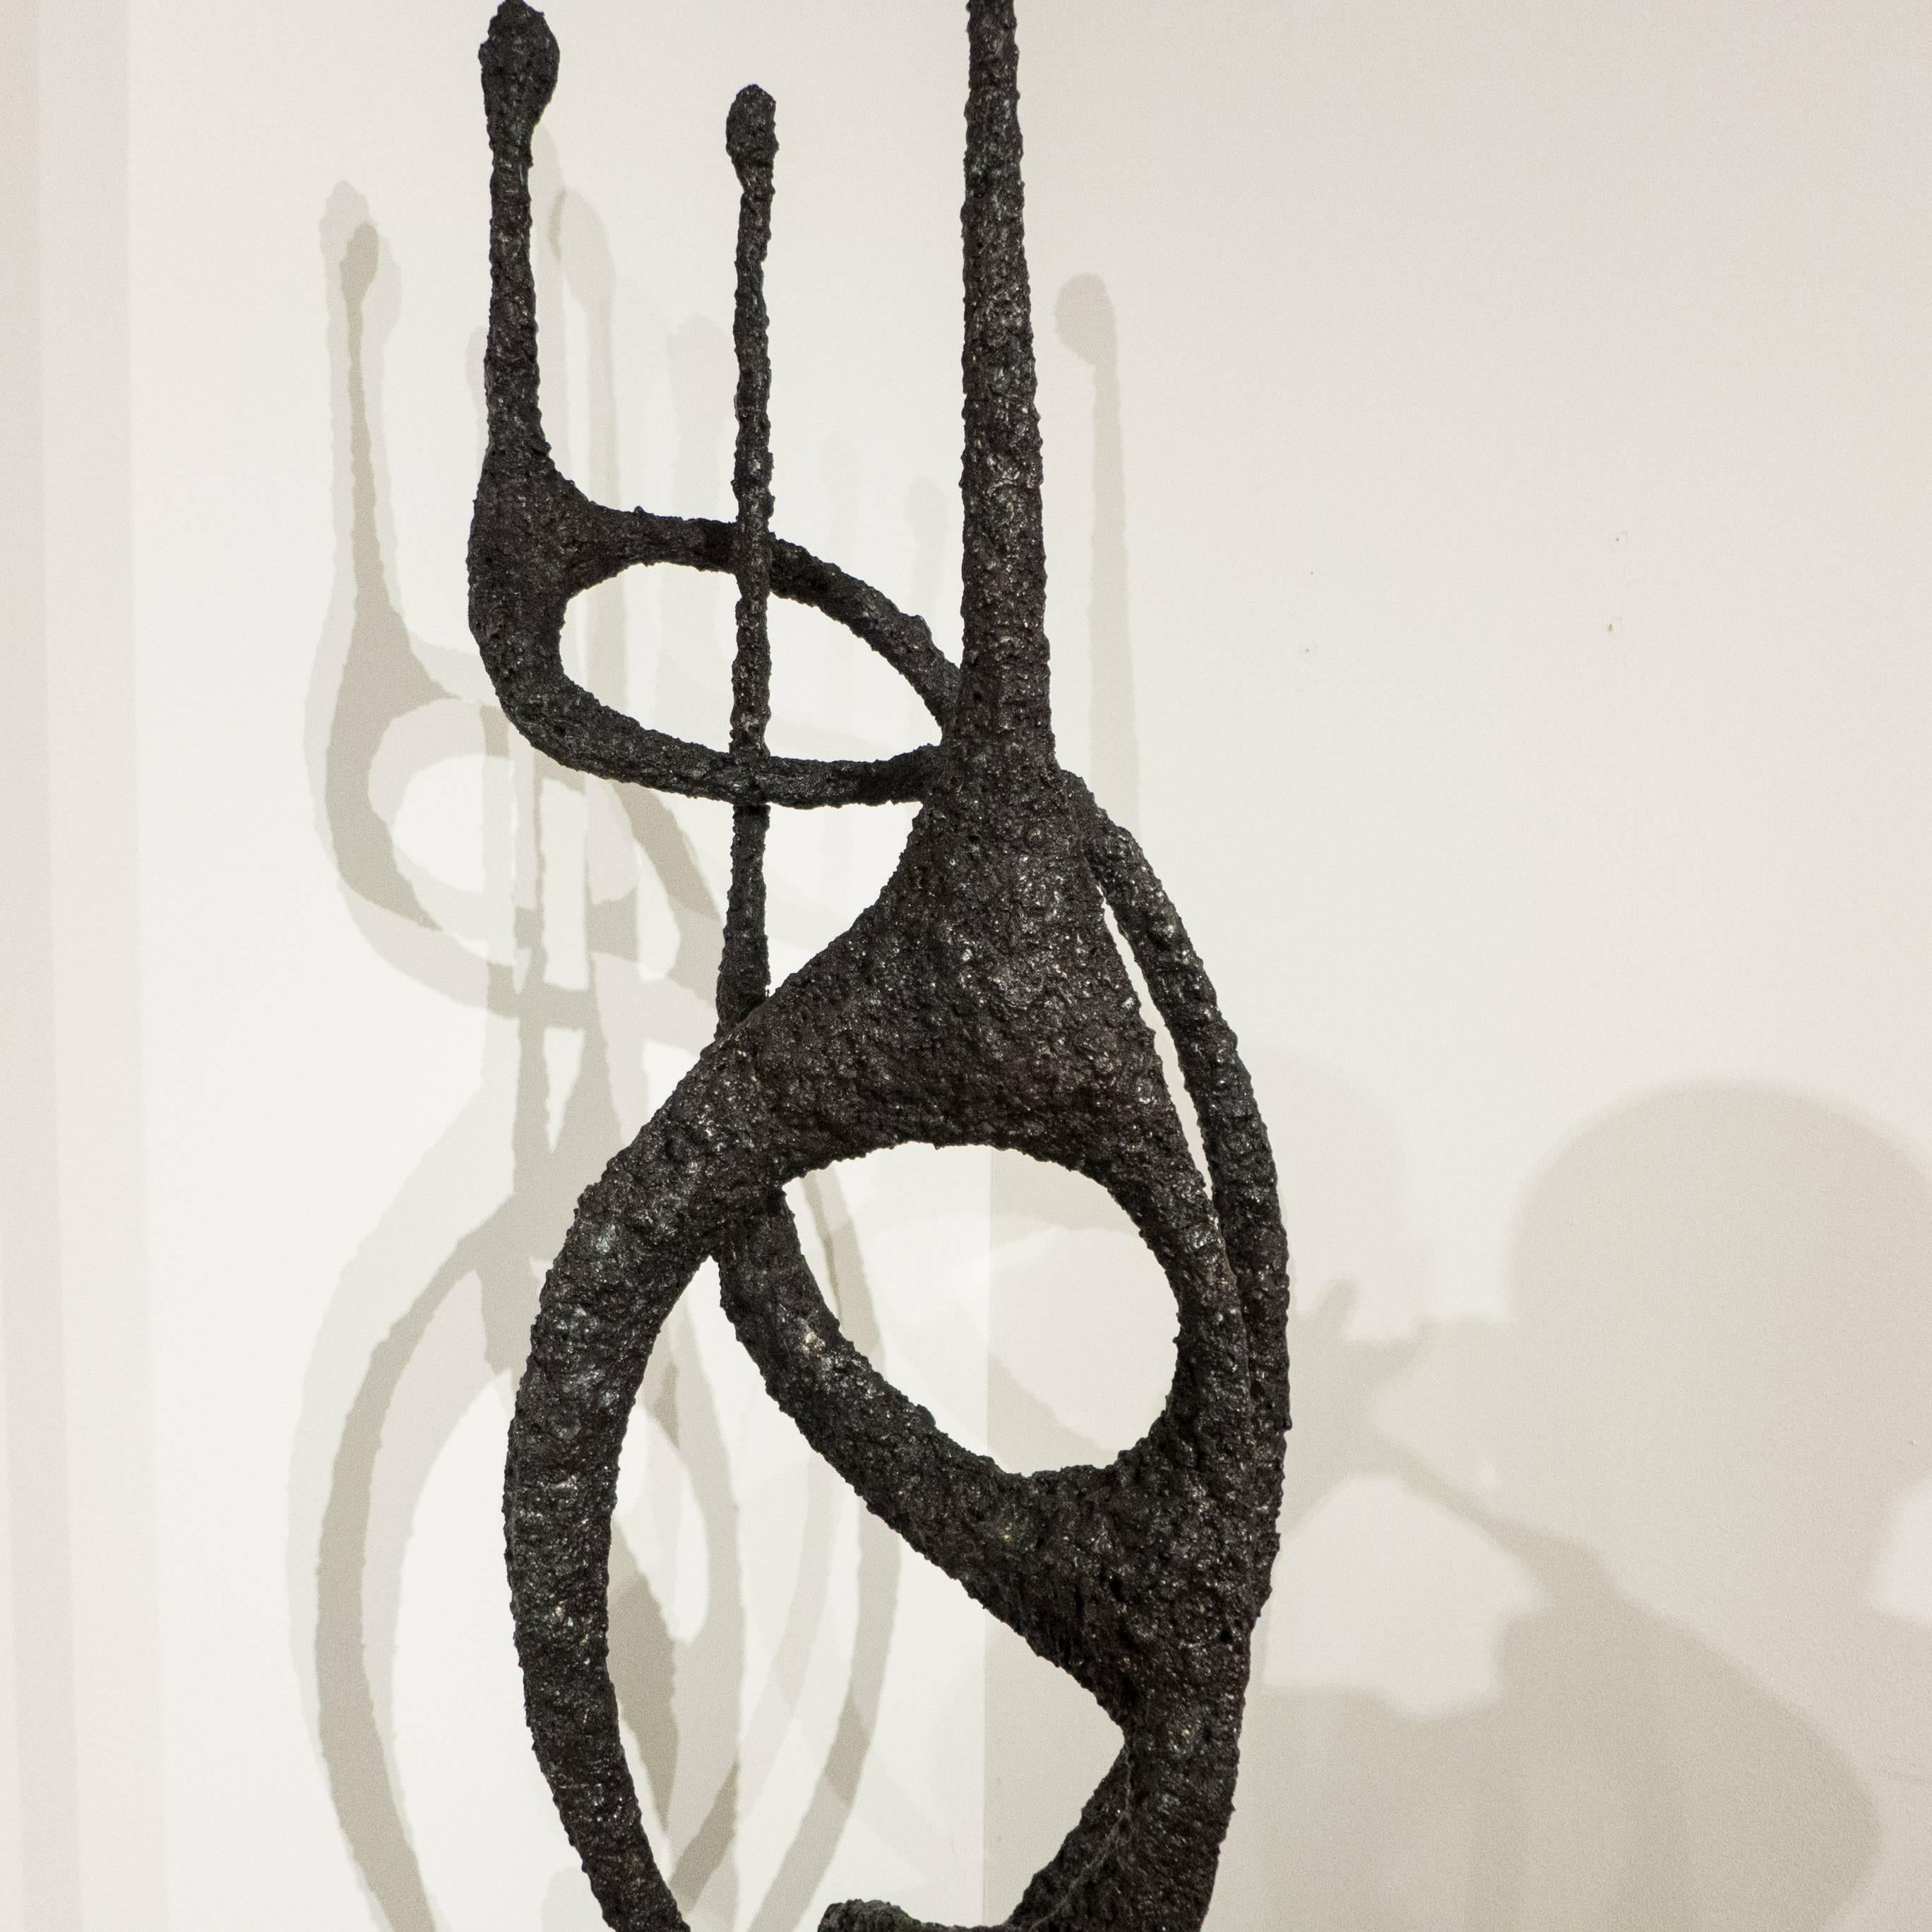 Blackened James Bearden Tall Sculpture, 